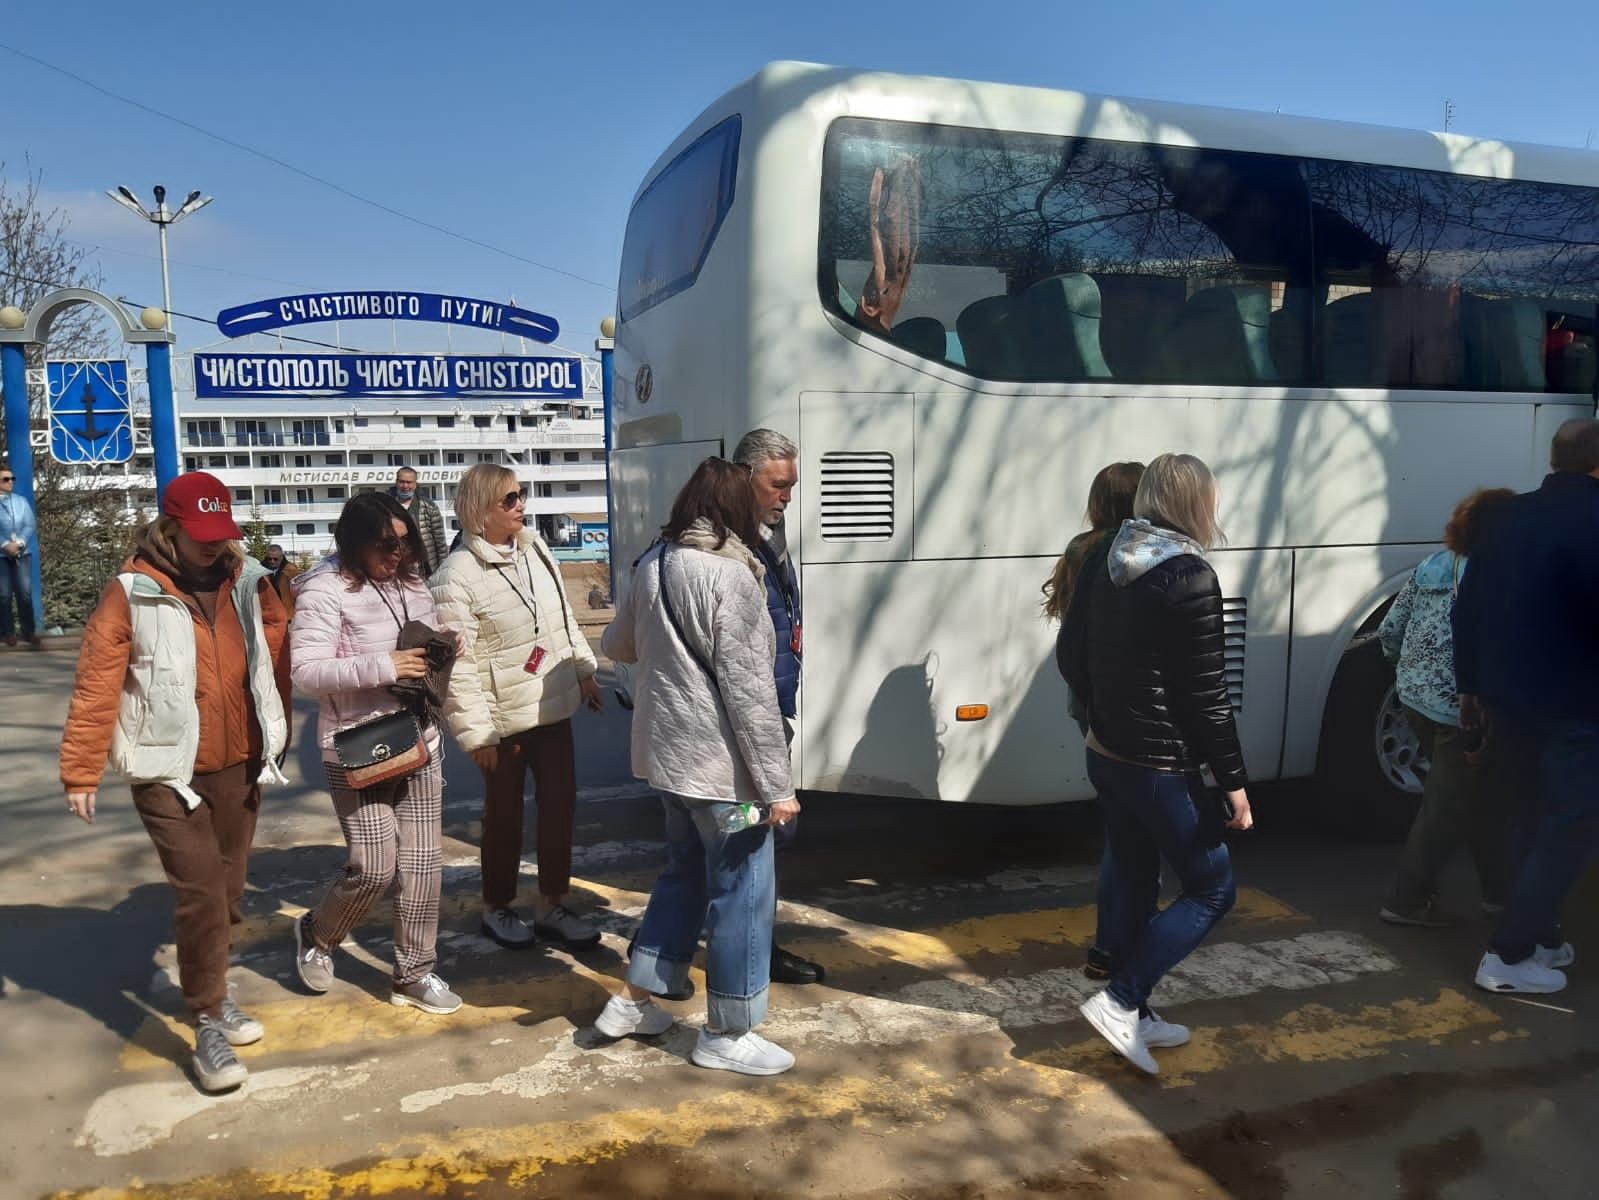 Первые 170 туристов прибыли в Чистополь на теплоходе